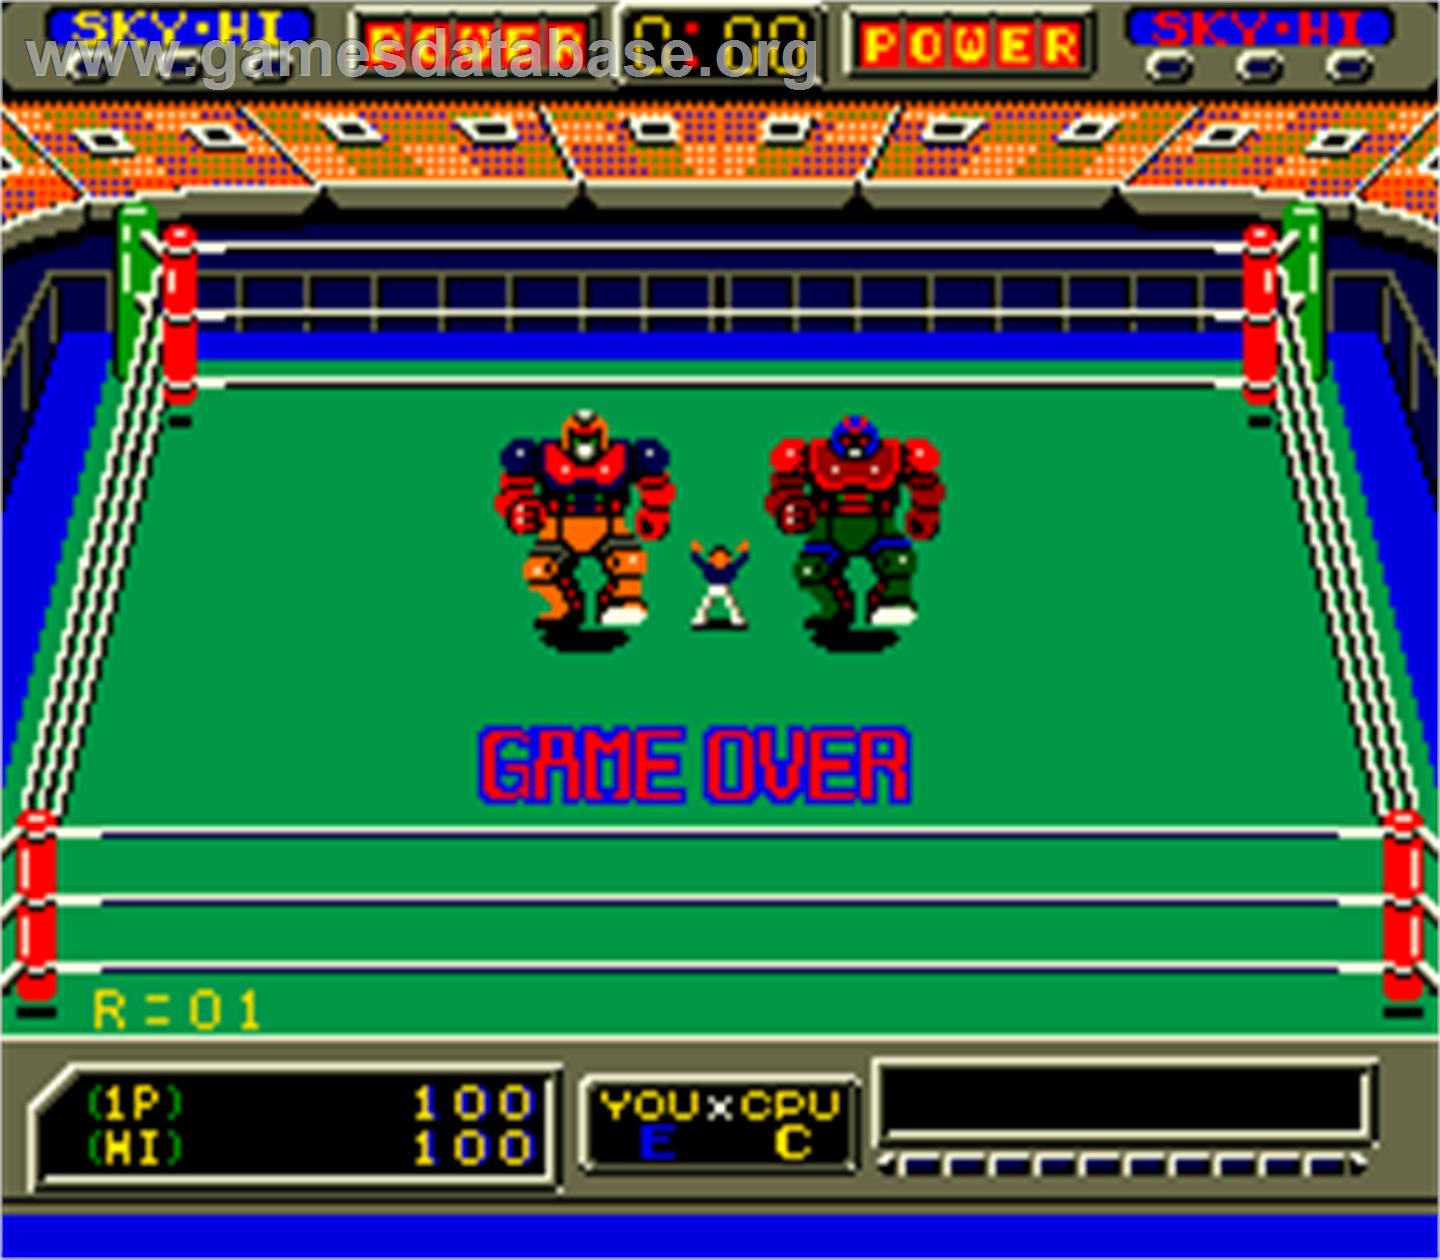 Robo Wres 2001 - Arcade - Artwork - Game Over Screen